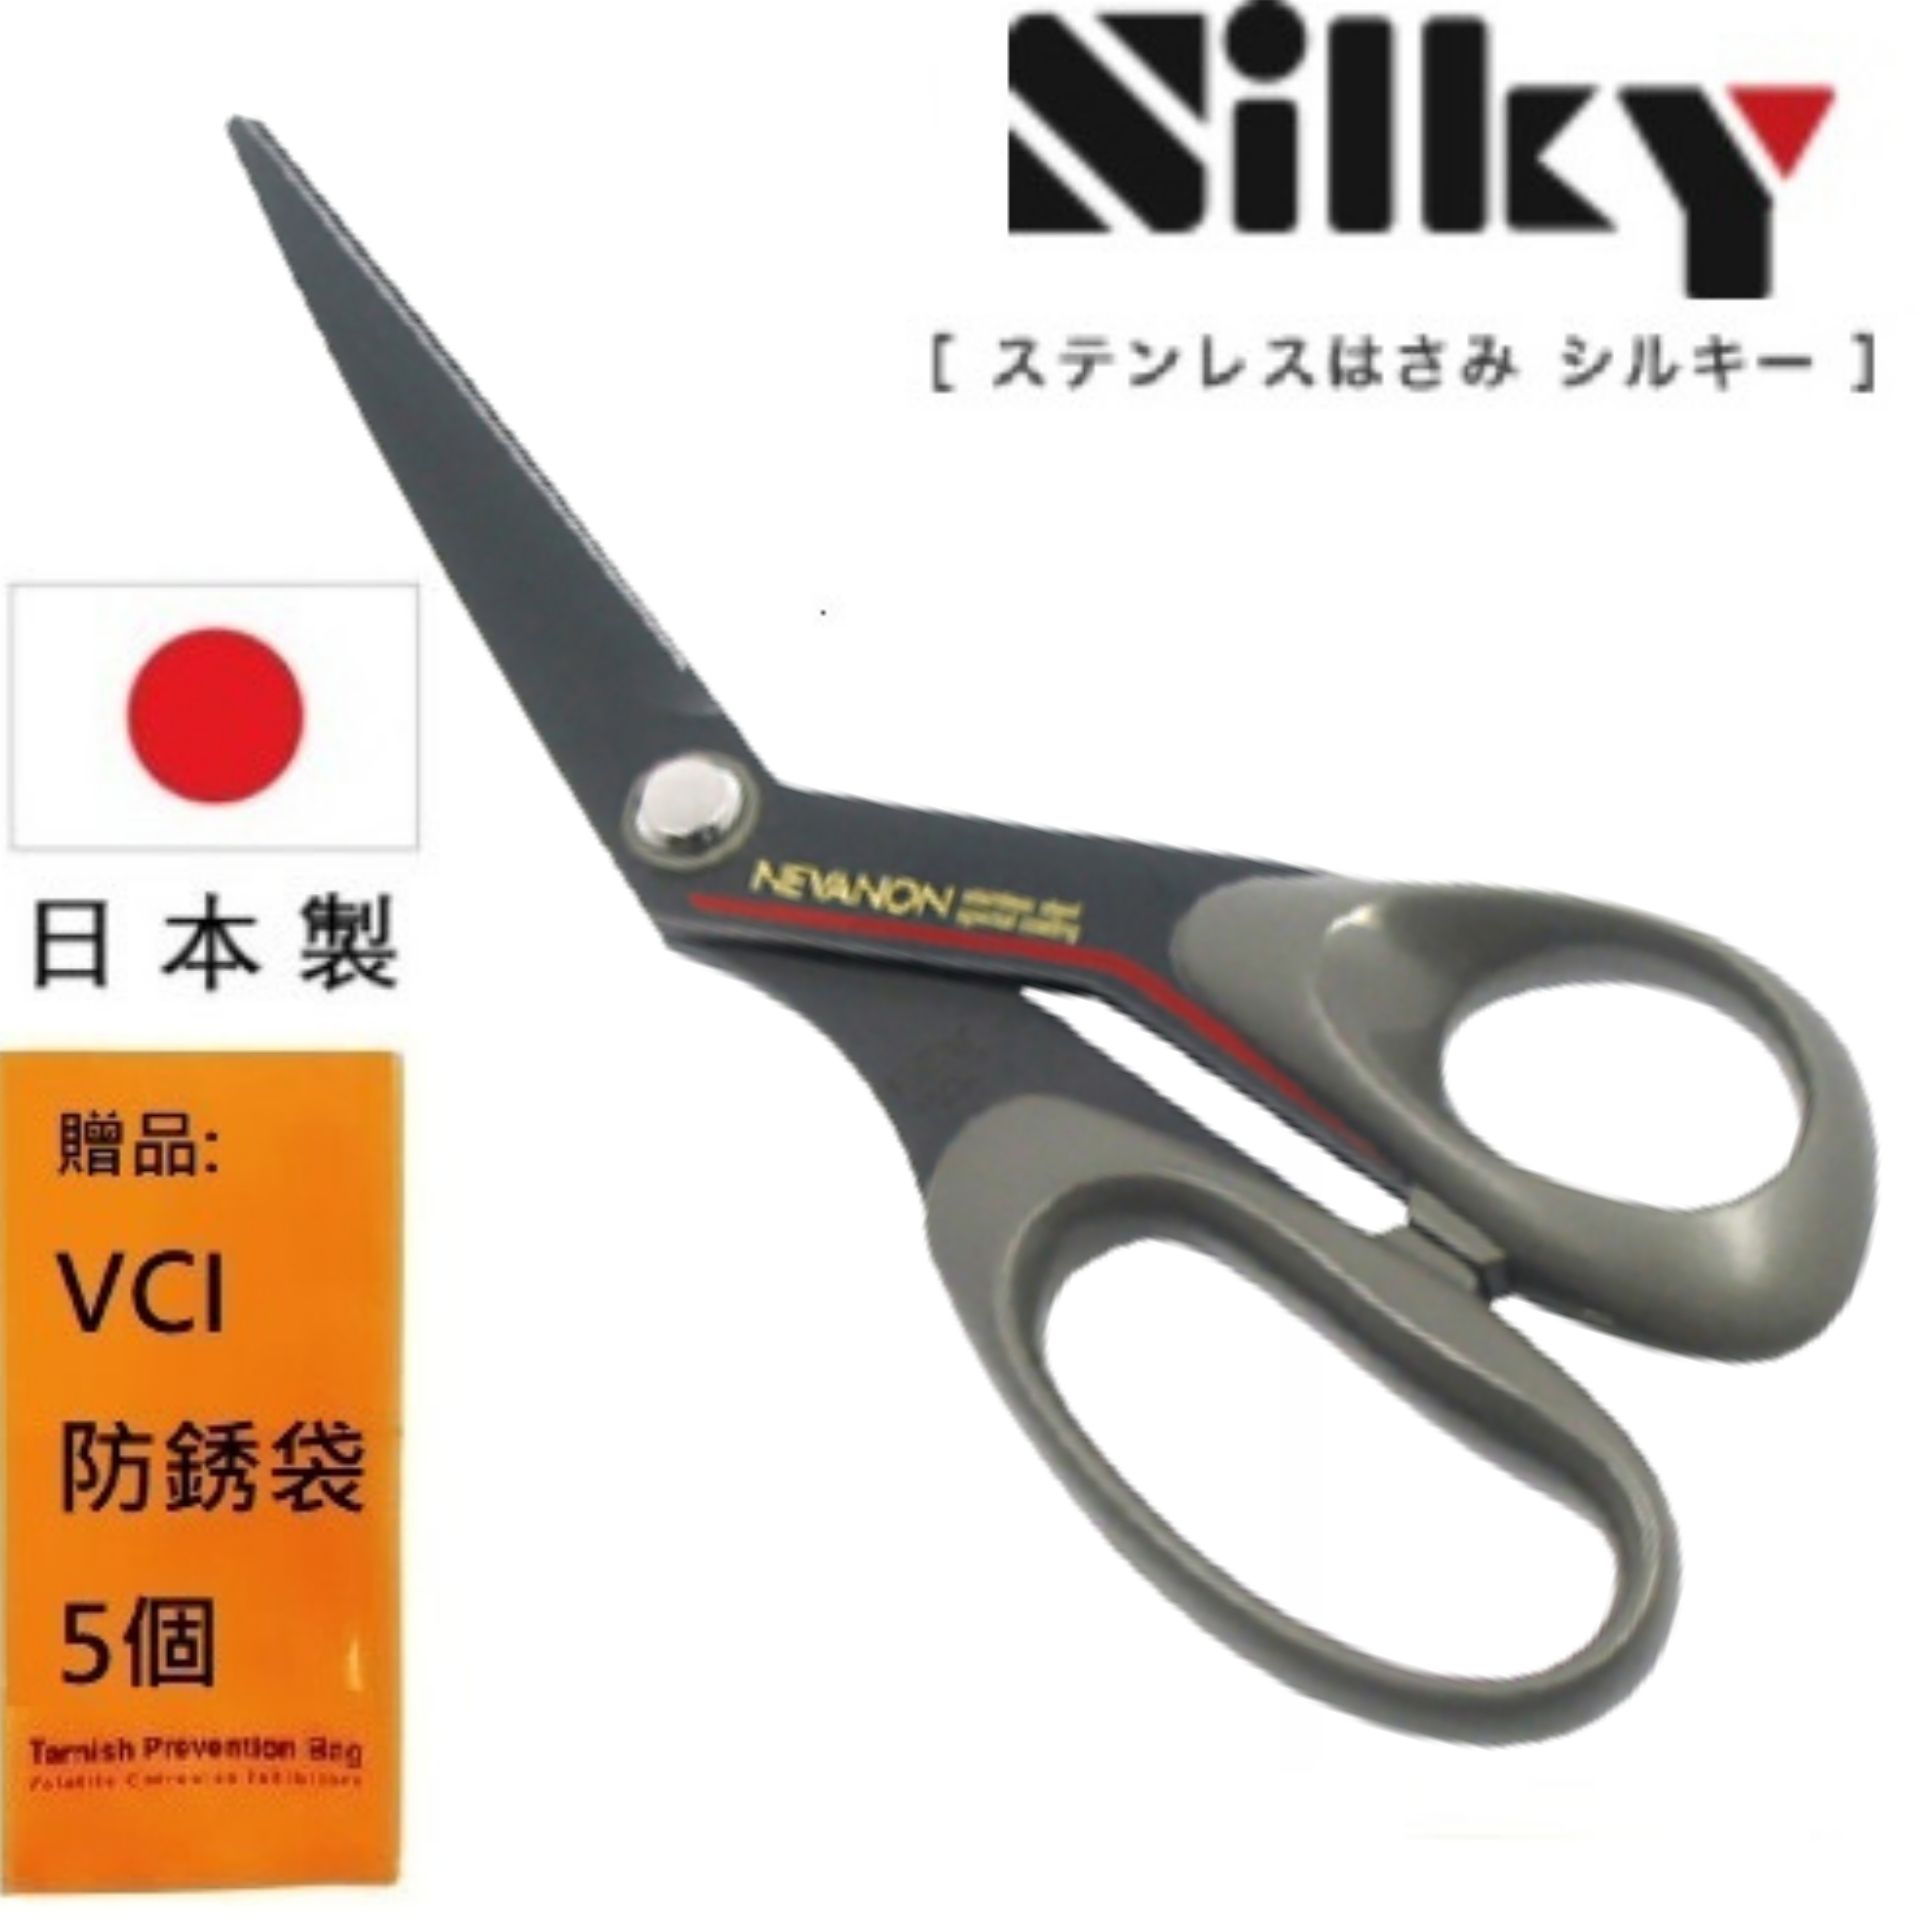 【日本SILKY】黑刃超不粘膠剪刀-斜刃-210mm 日本製造 原裝進口刃物鋼